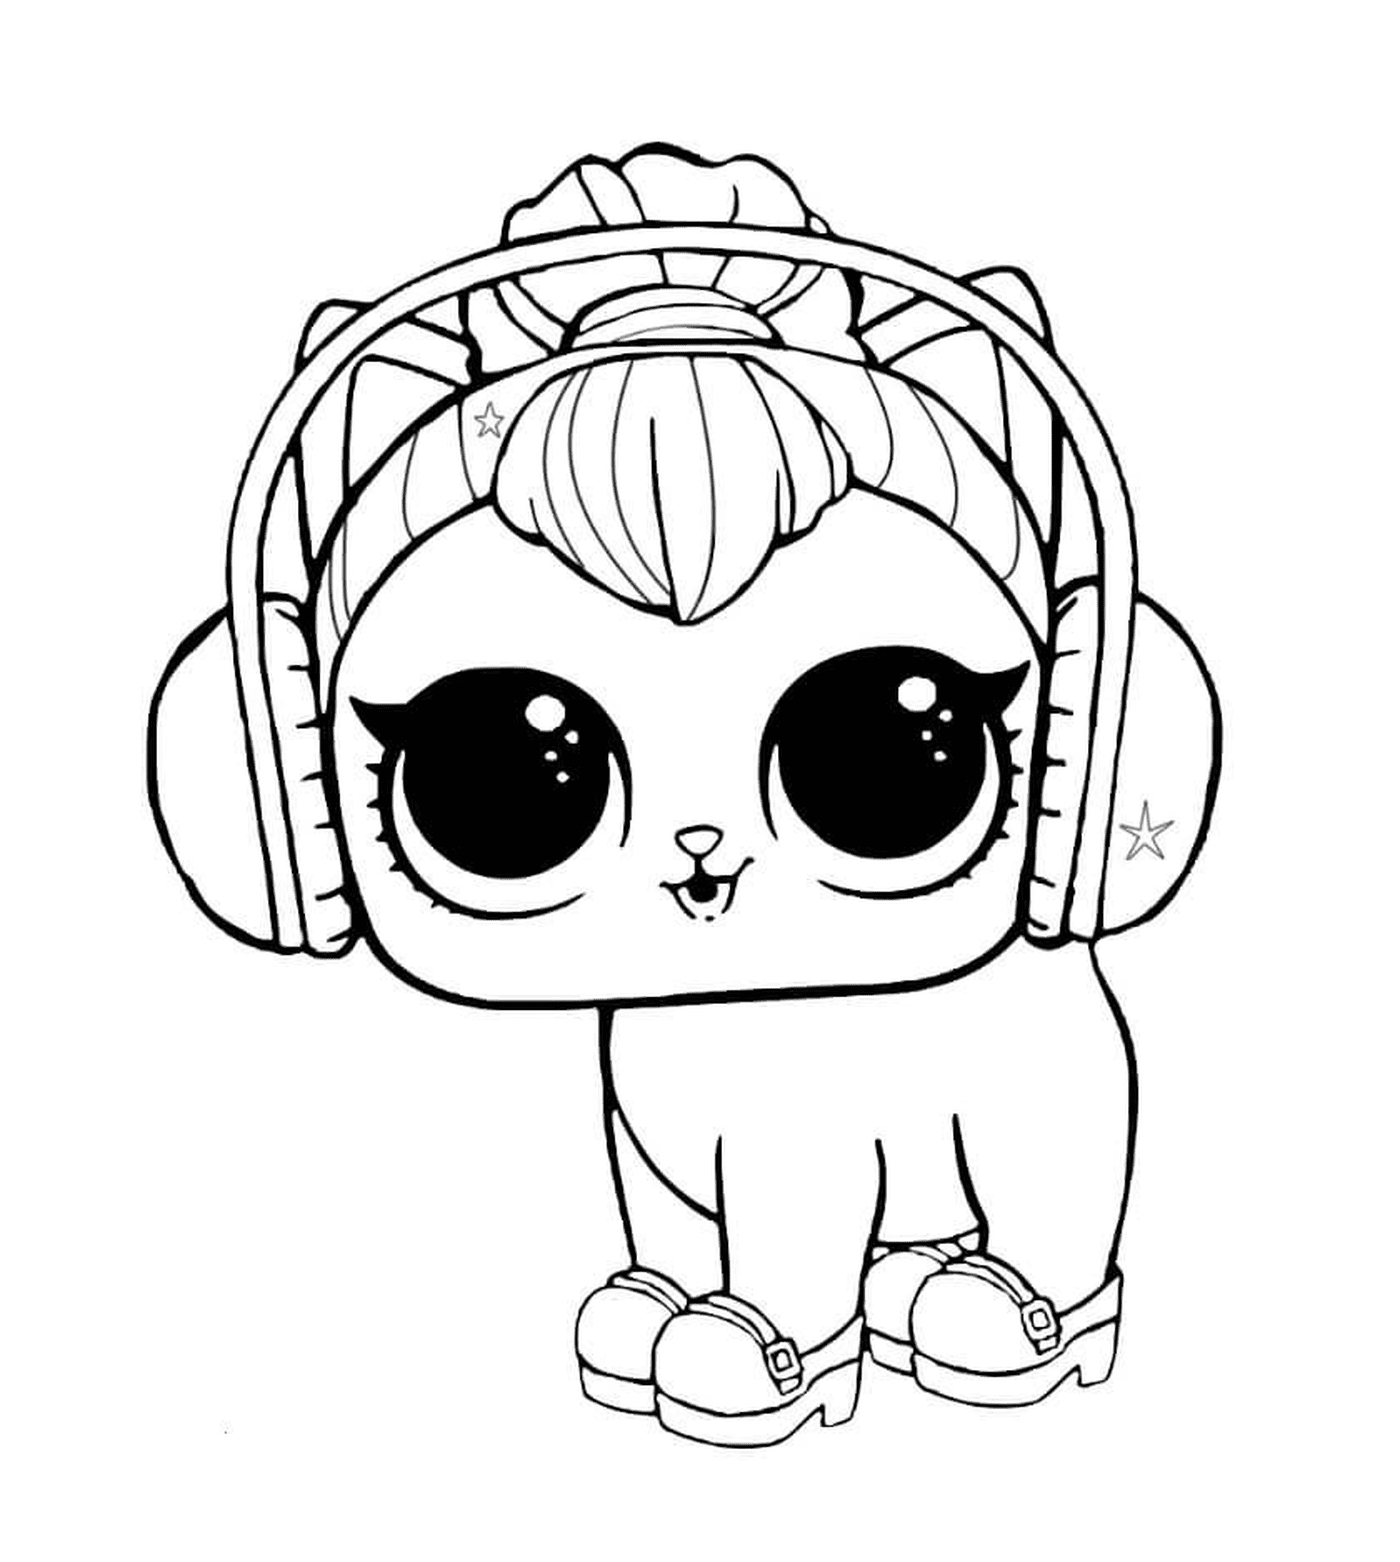  Cat with headphones 